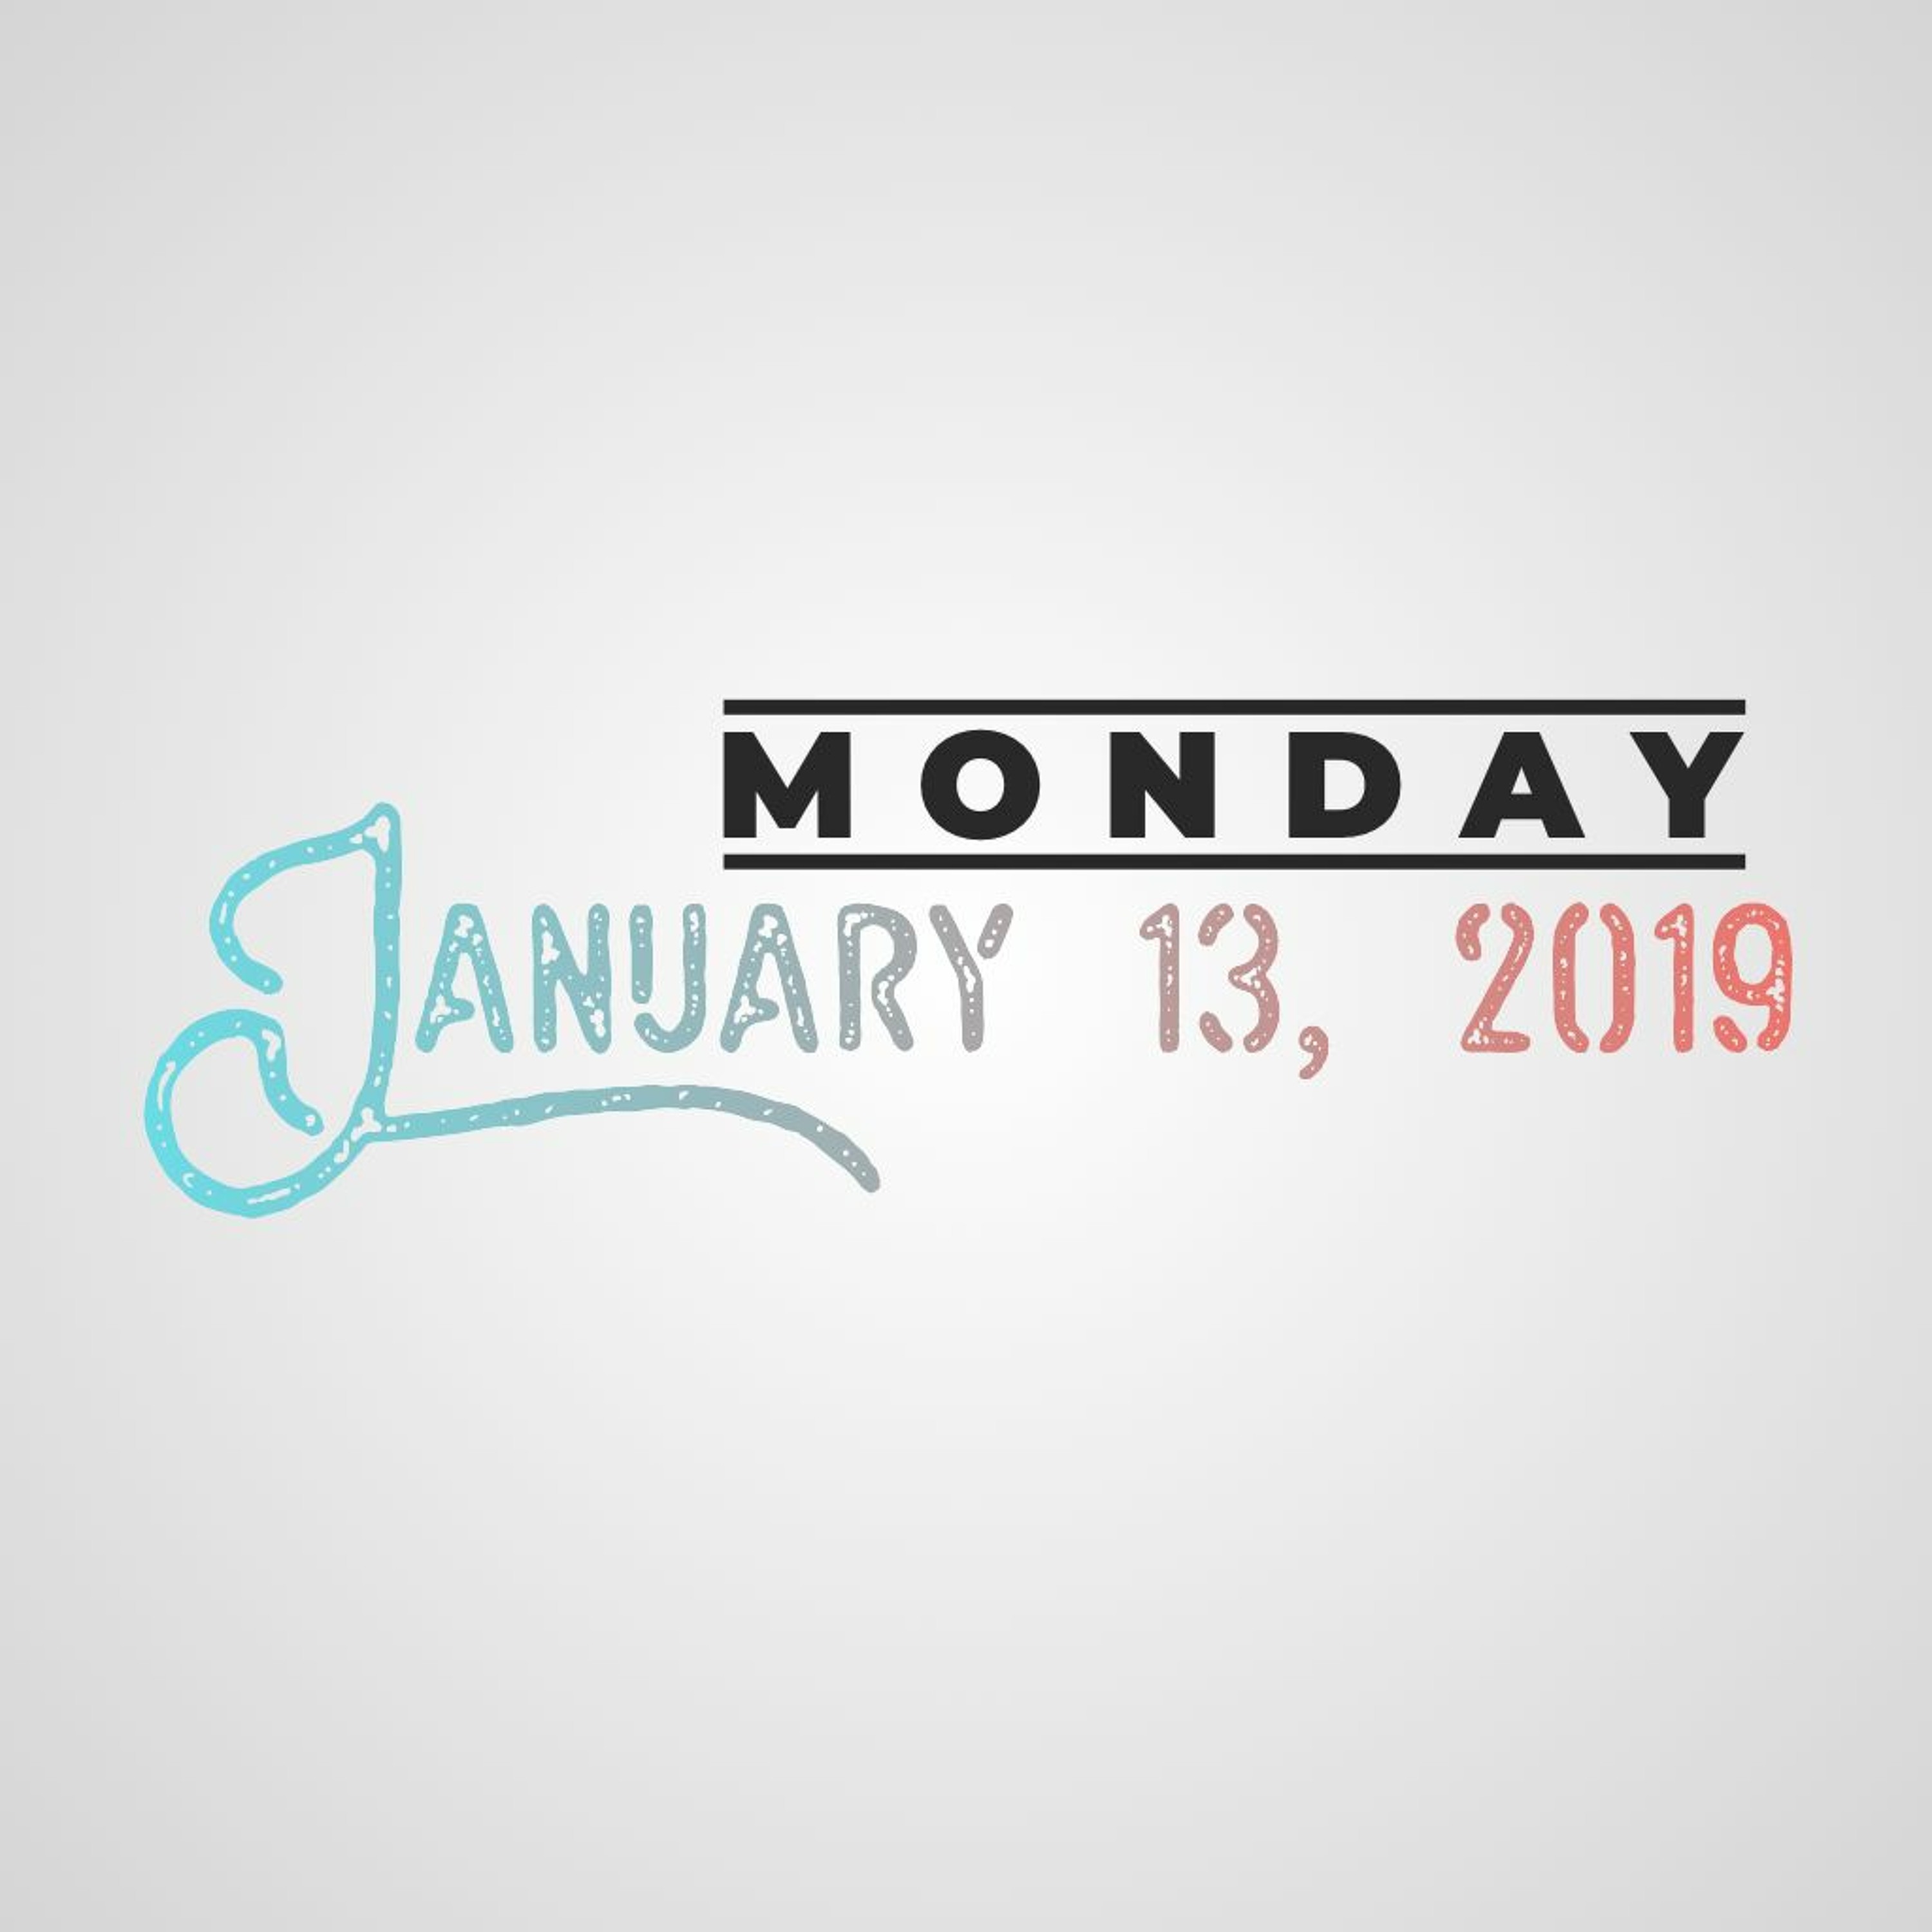 Monday, January 13, 2020